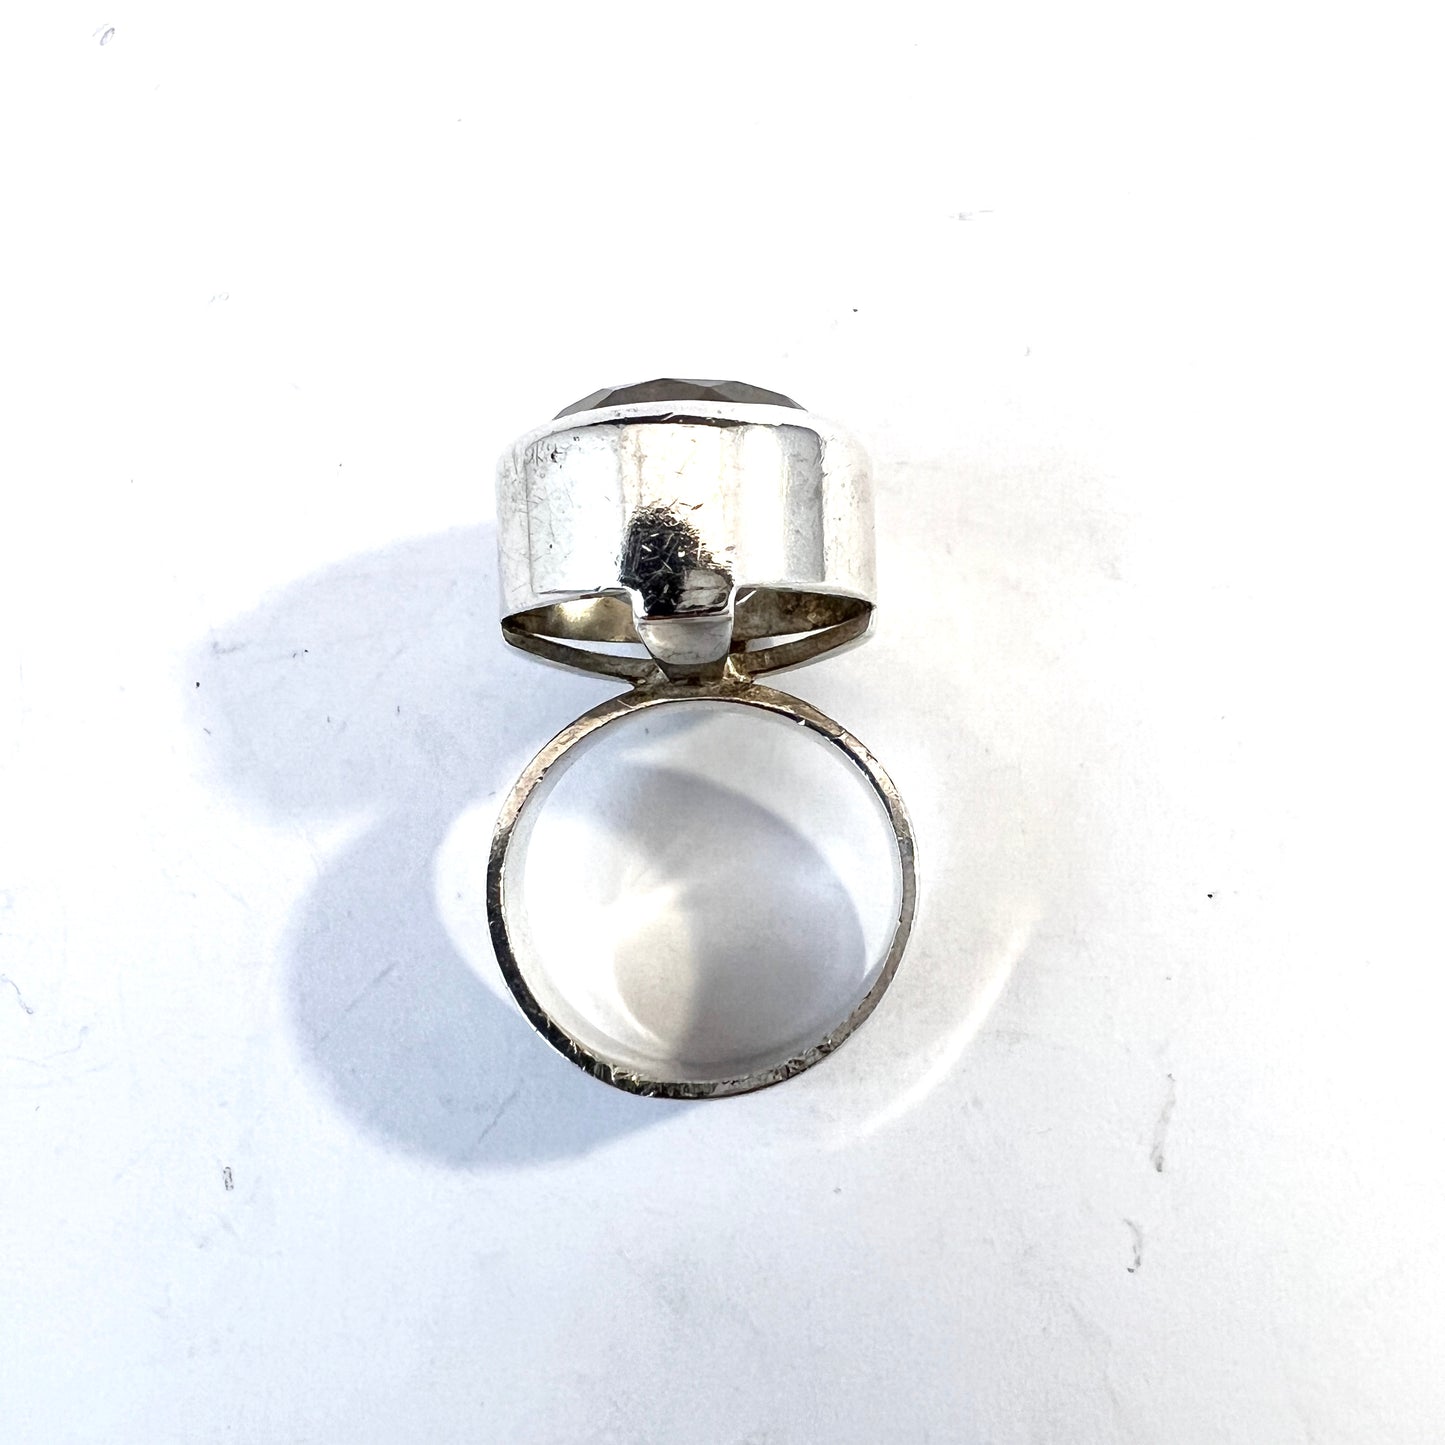 Hansen, Sweden 1965. Vintage Sterling Silver Rock Crystal Ring.